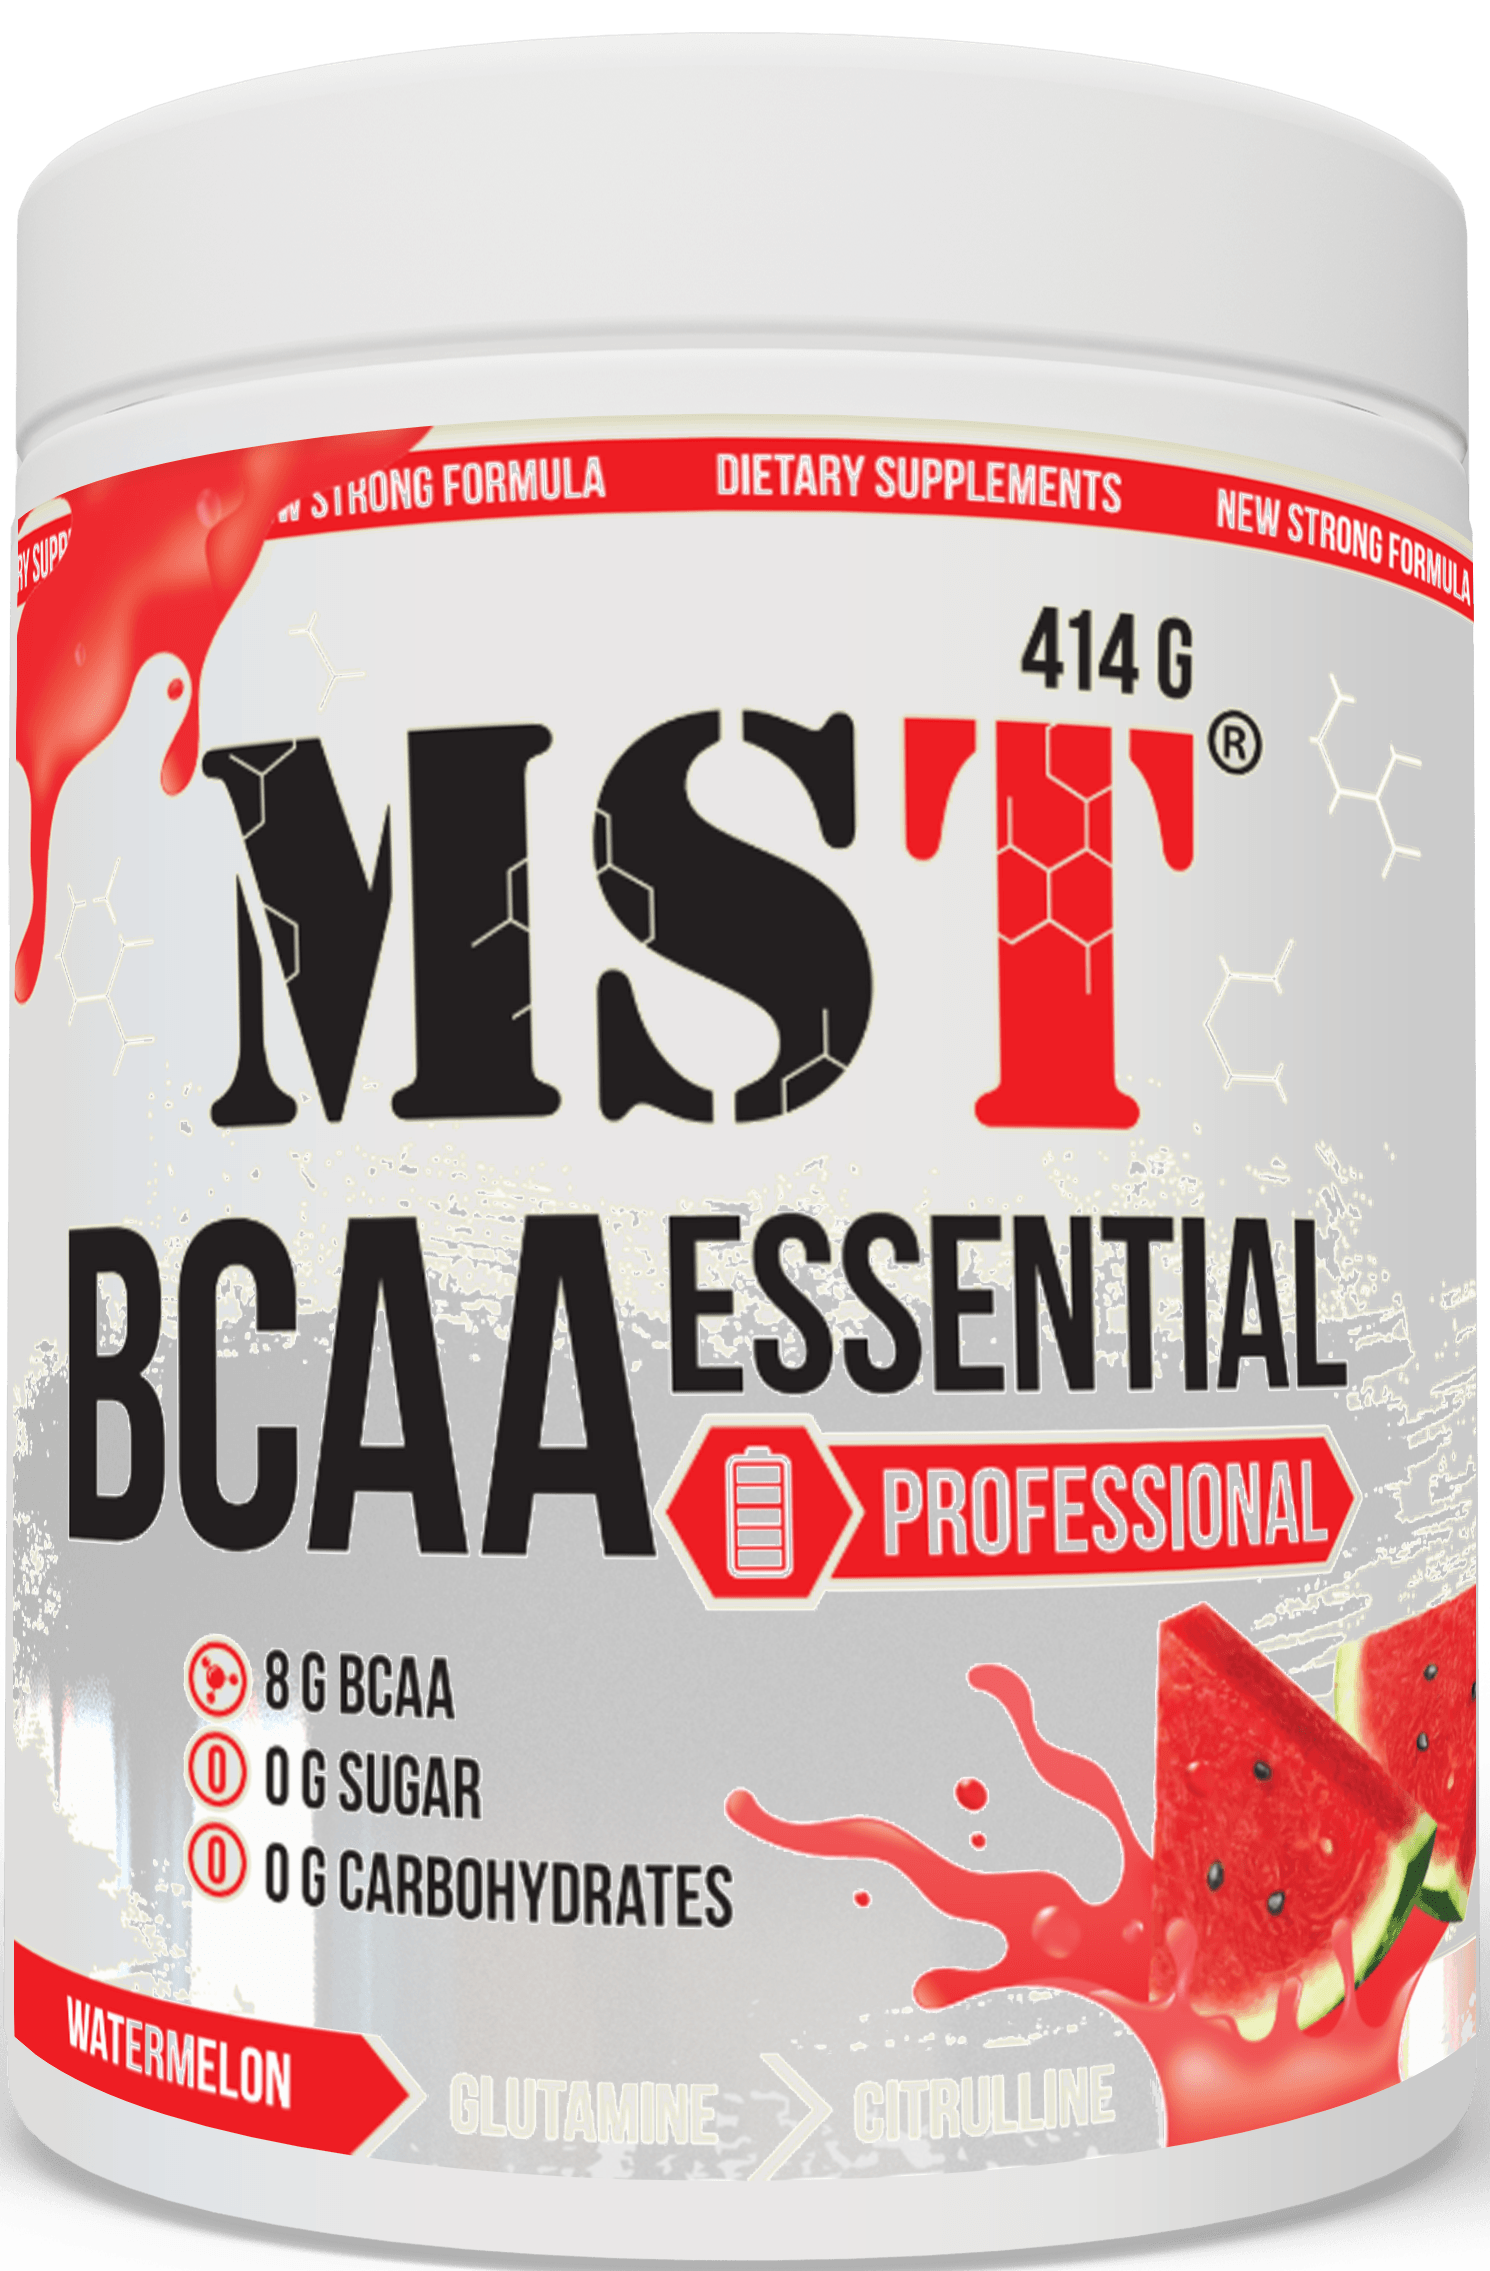 BCAA Essential Professional, 414 g, MST Nutrition. Complejo de aminoácidos. 